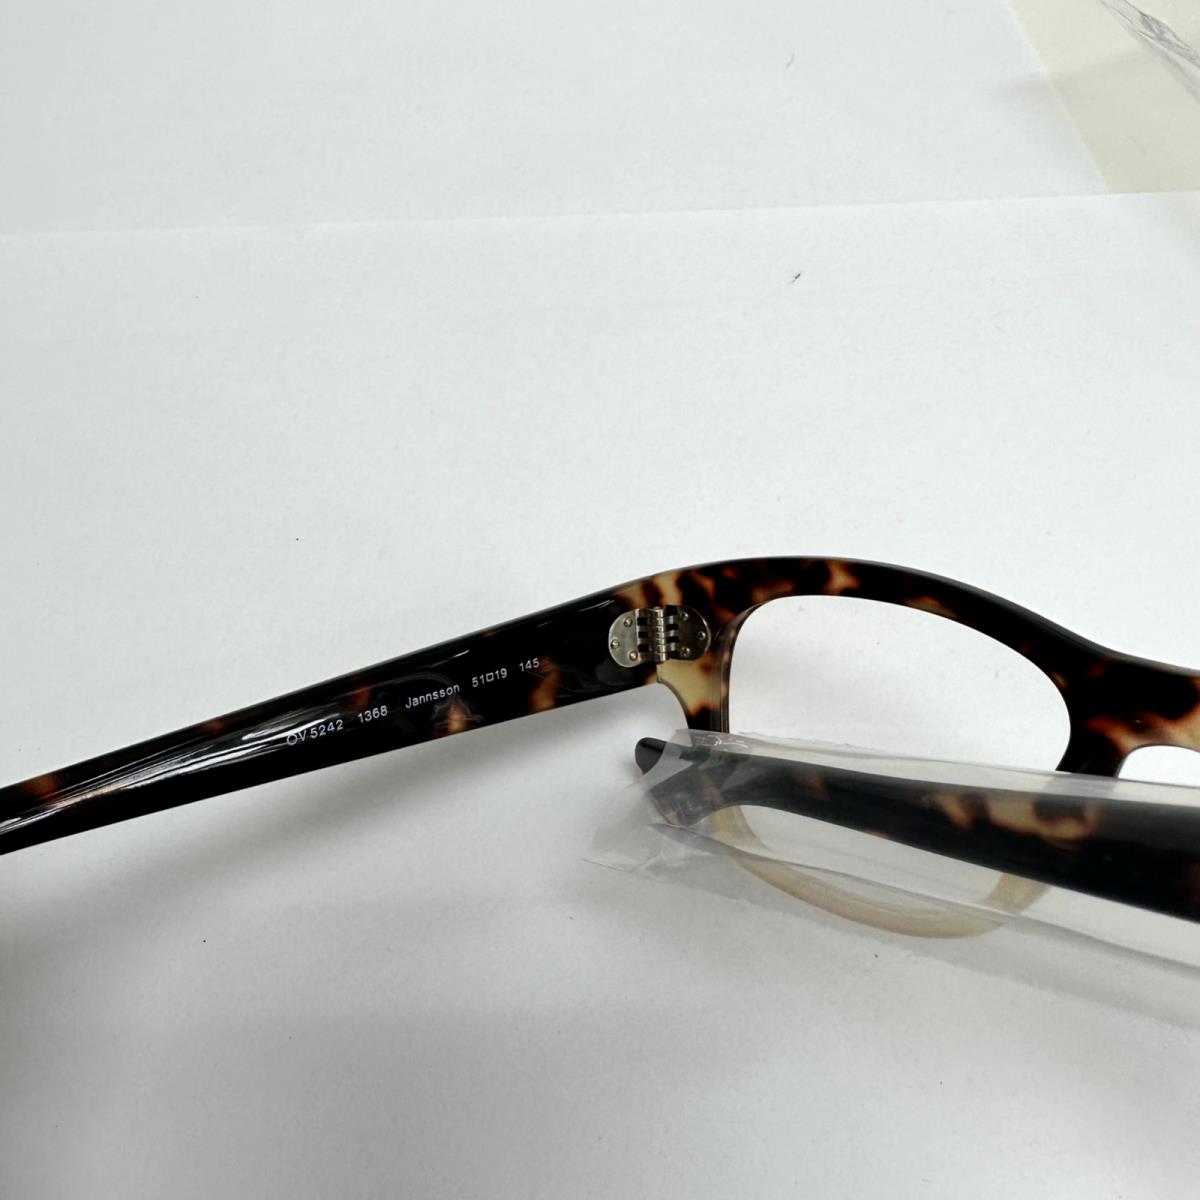 Oliver Peoples eyeglasses JANNSSON - Brown Frame